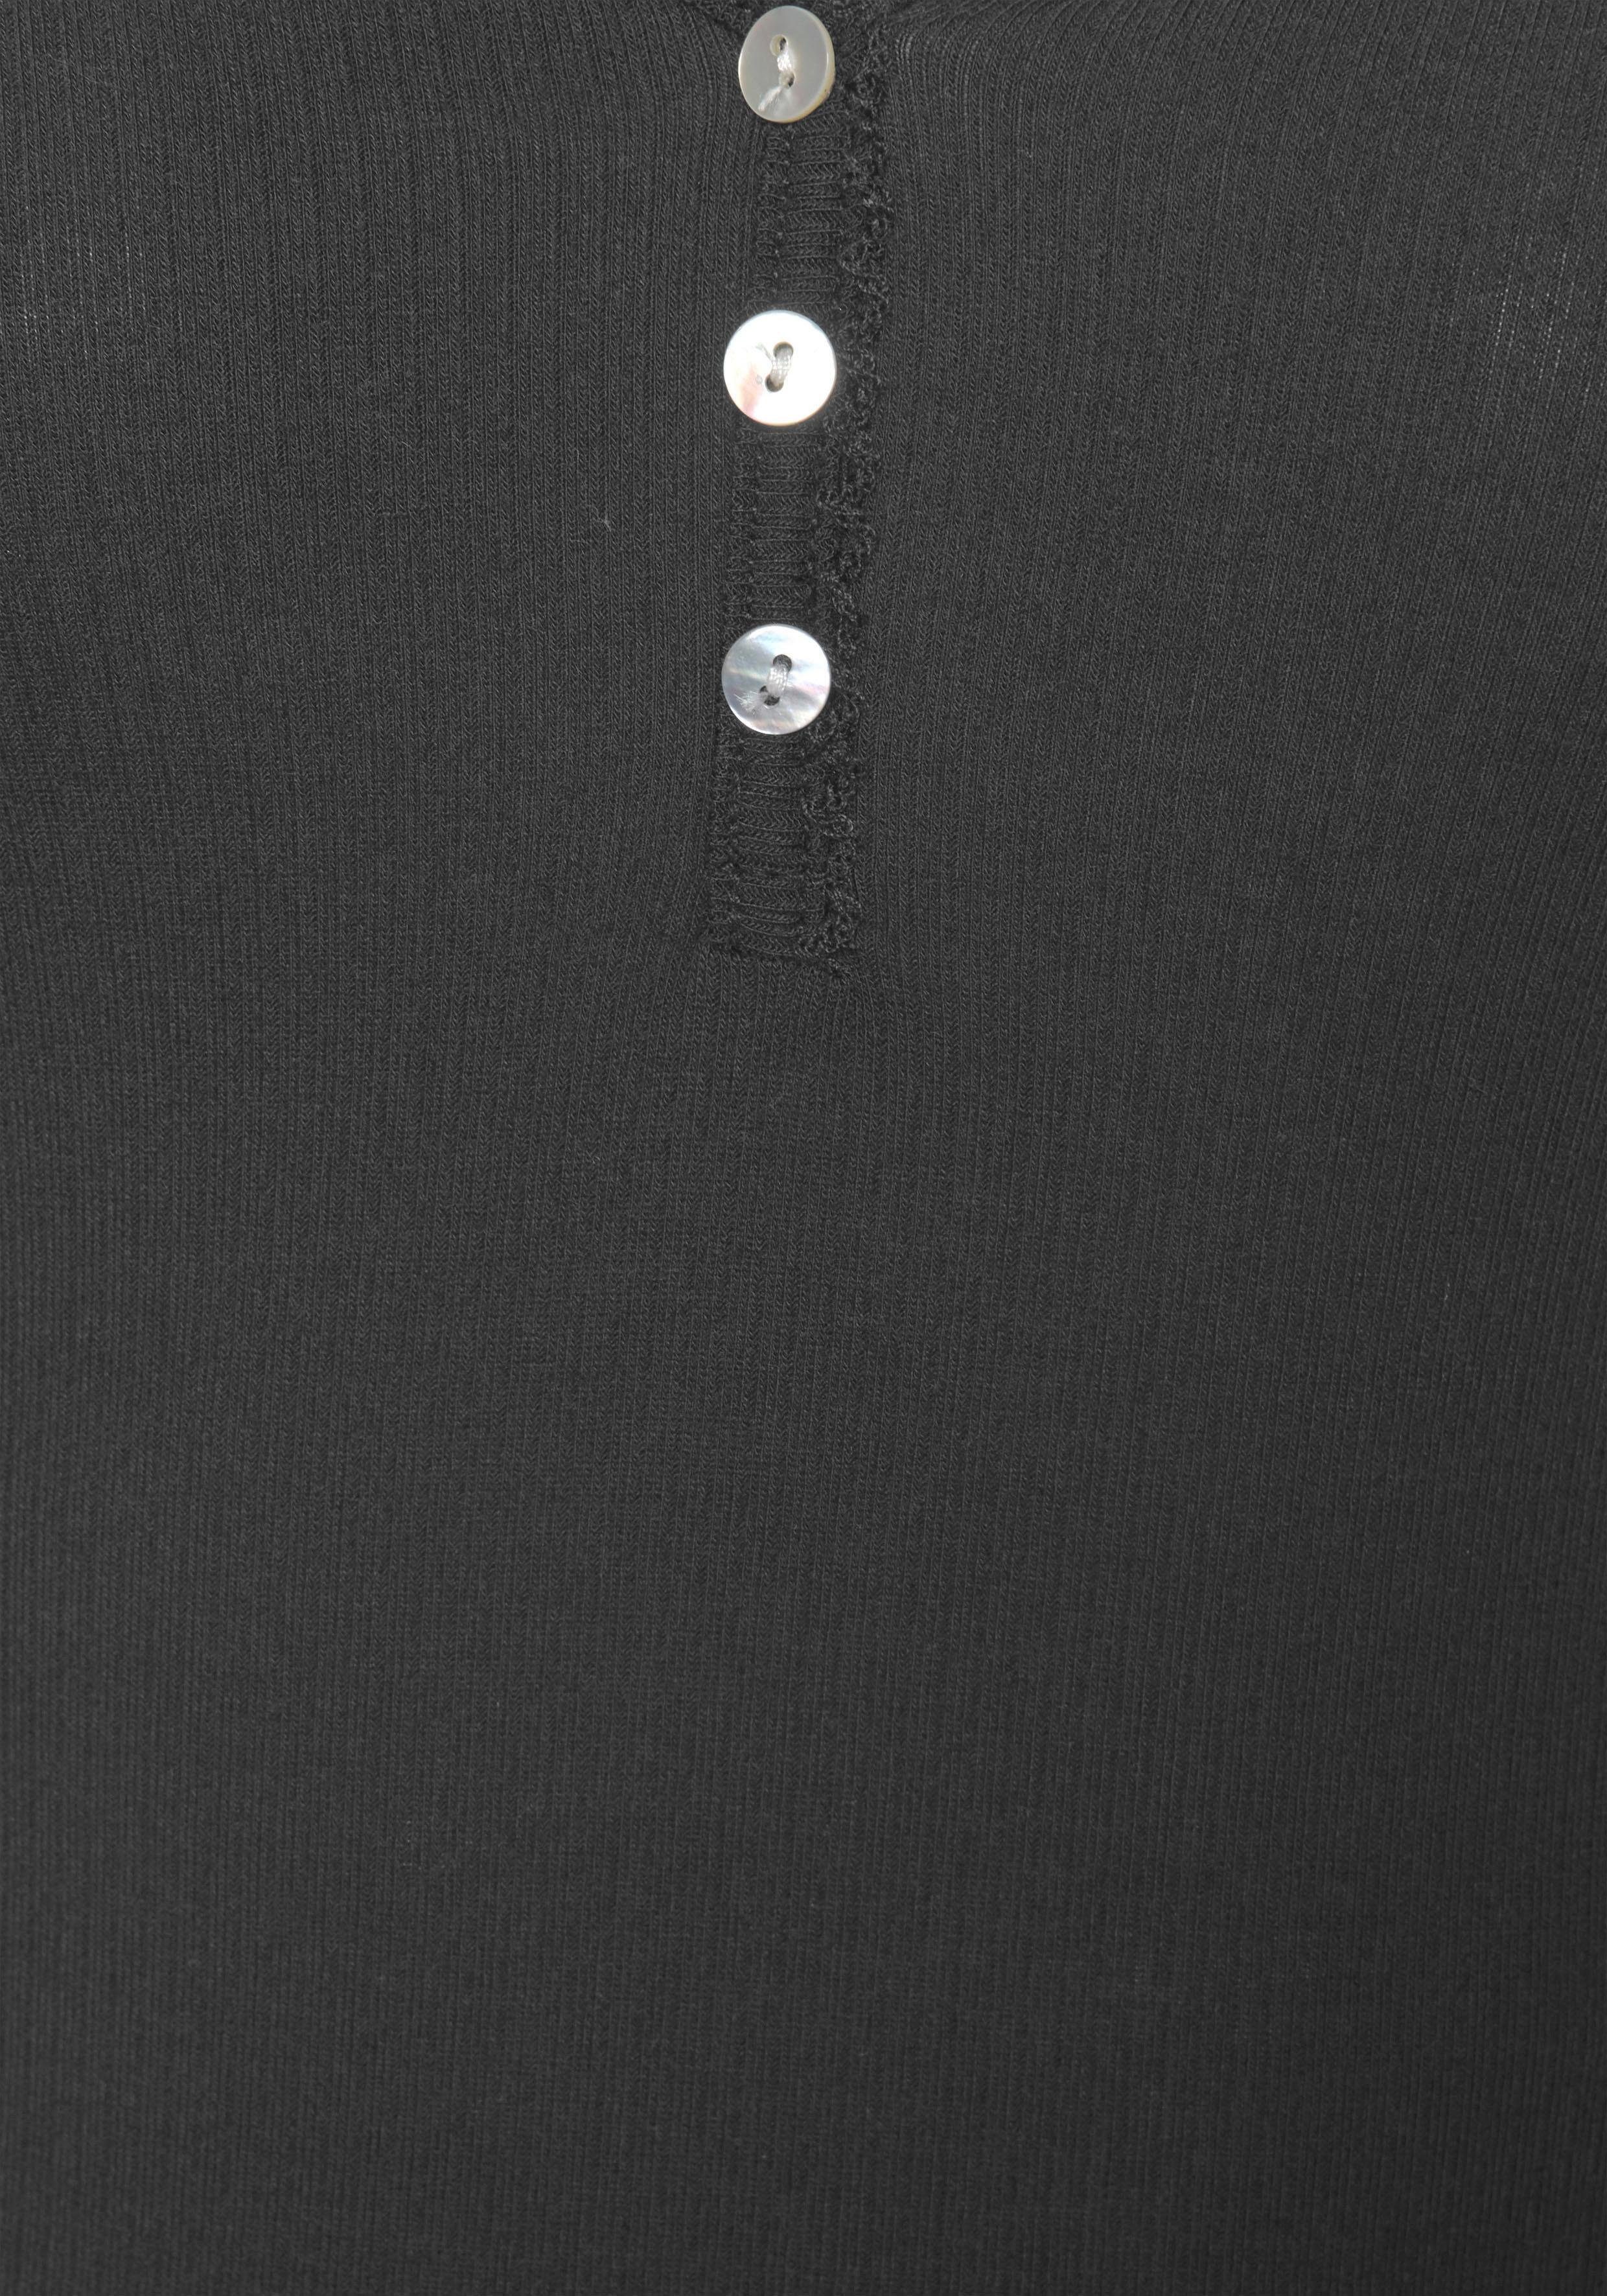 Langarmshirt geripptem Stoff aus s.Oliver schwarz mit Zier-Knopfleiste